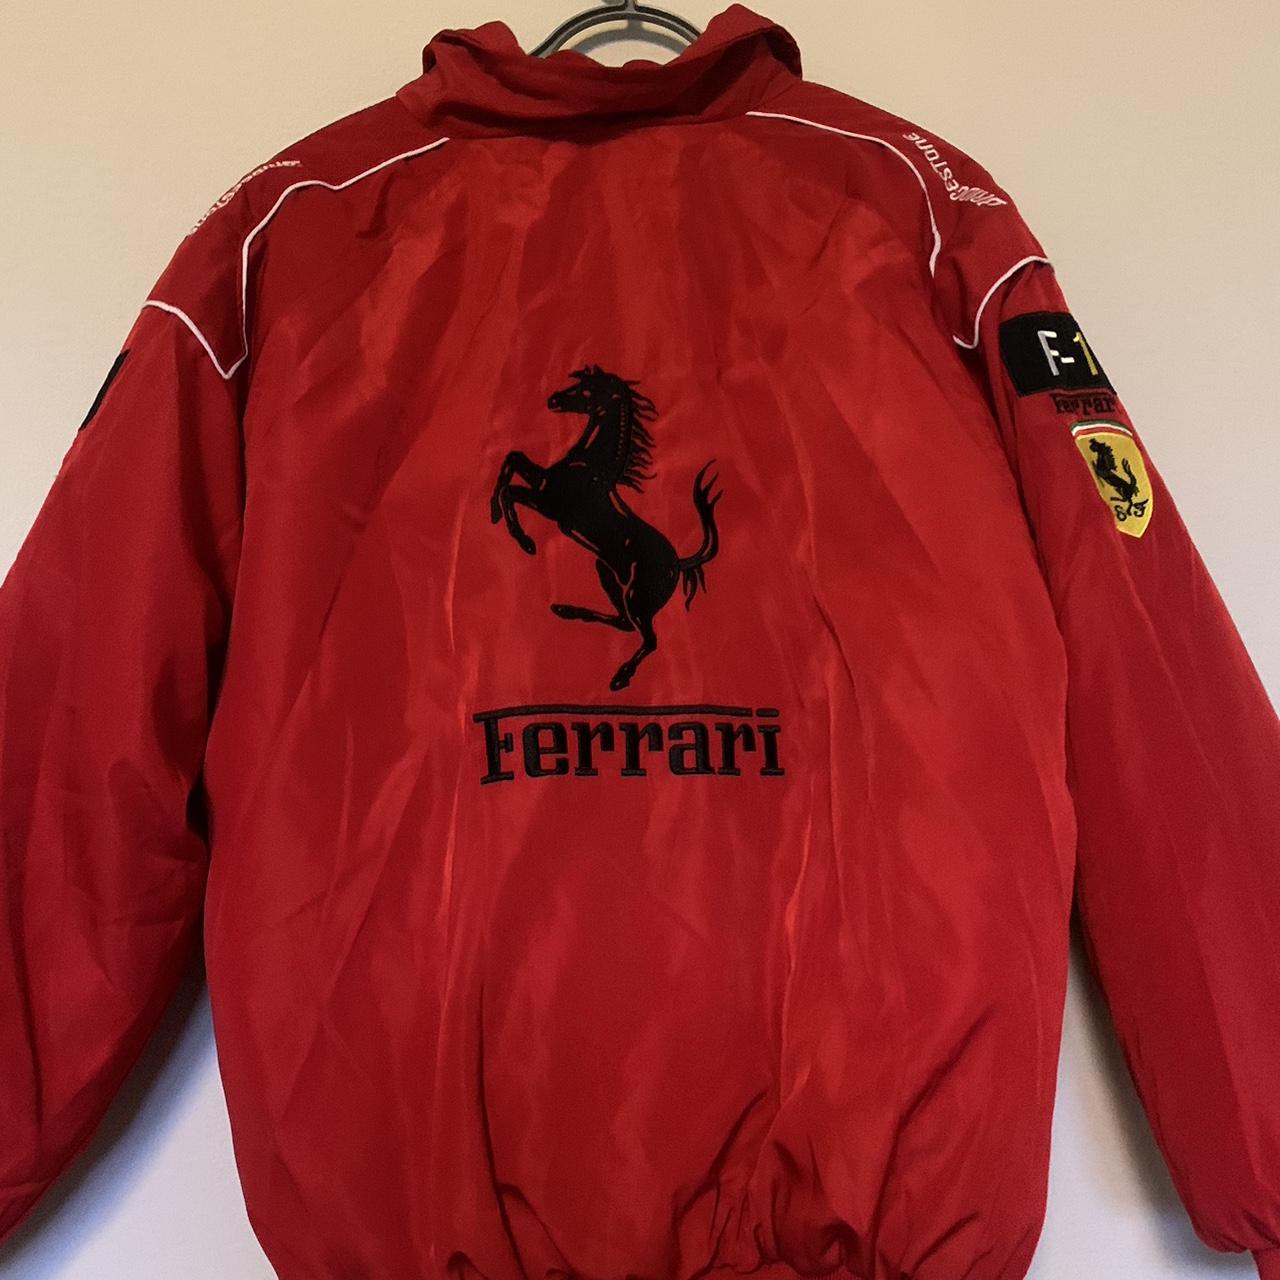 Super cute Ferrari jacket Bought from Etsy Slight... - Depop